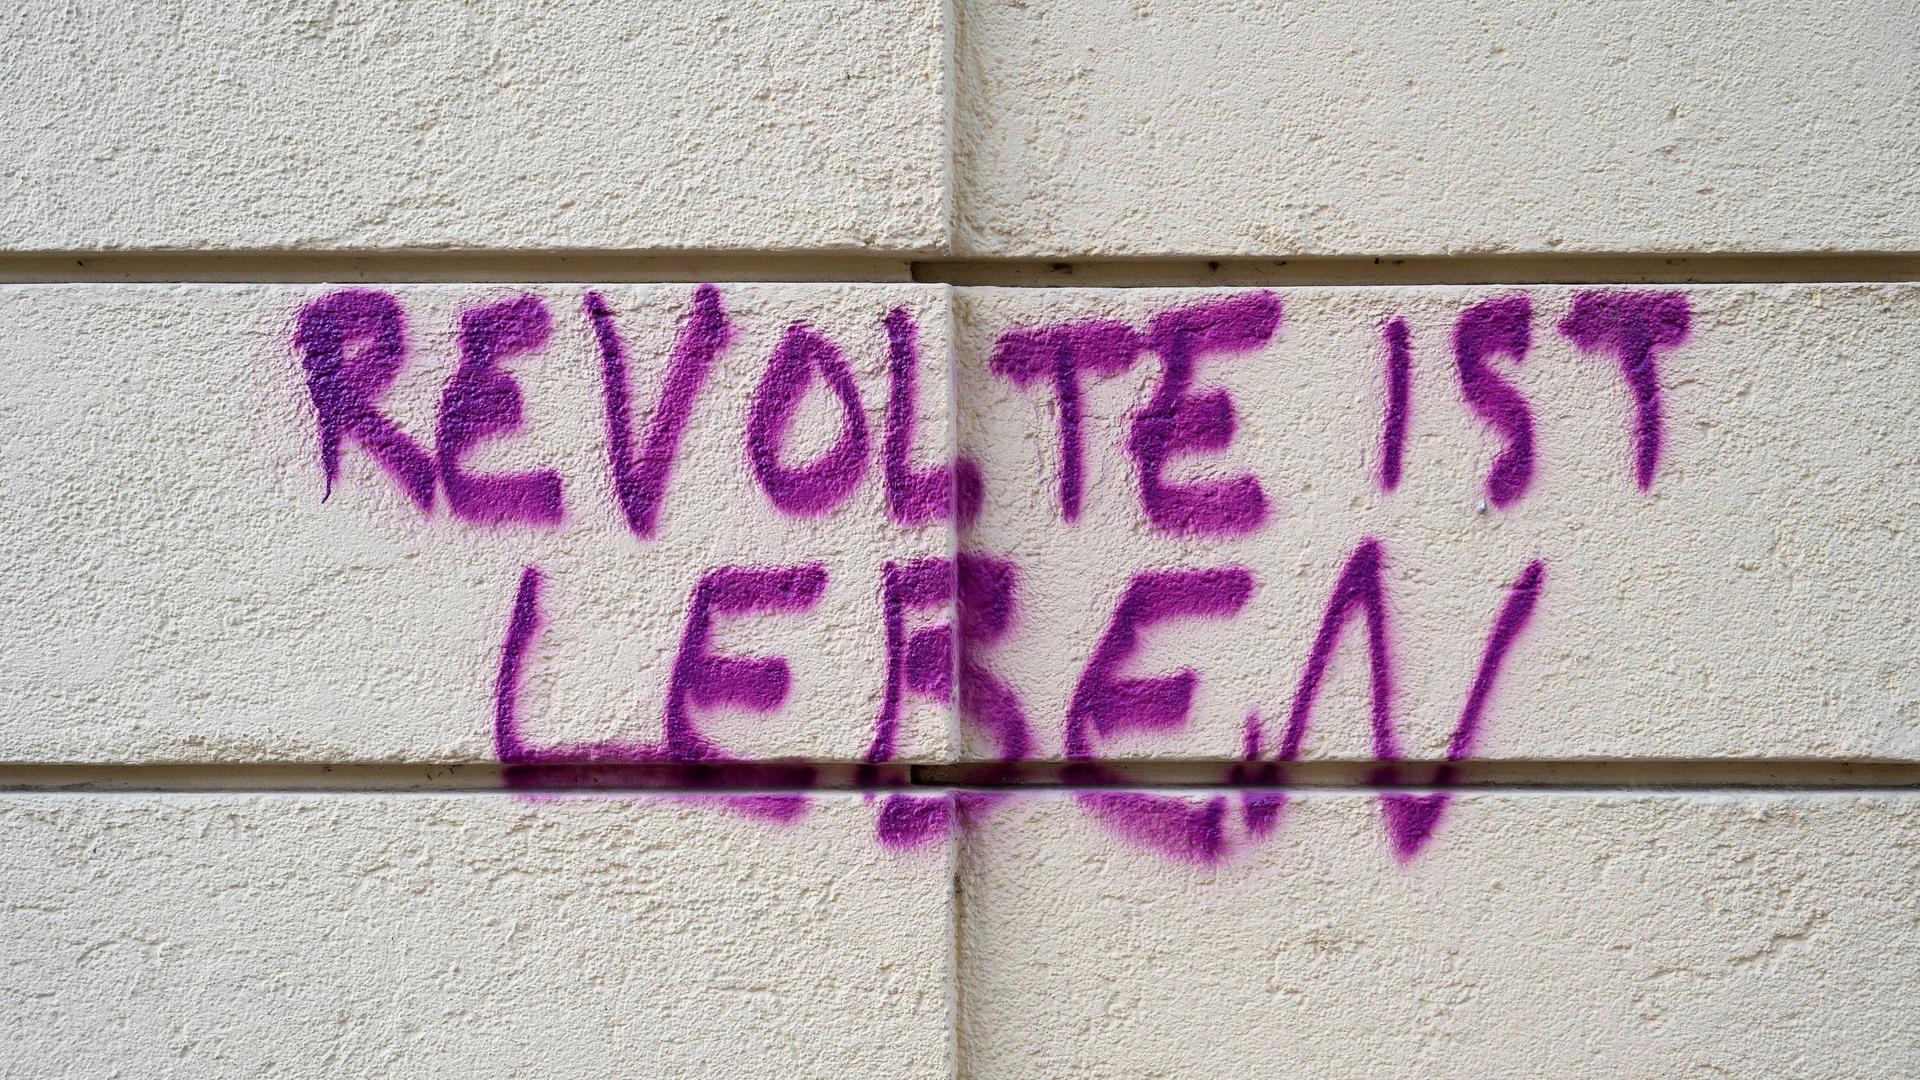 Gesprühter Schriftzug "Revolte ist Leben" auf einer Hauswand in Haidhausen